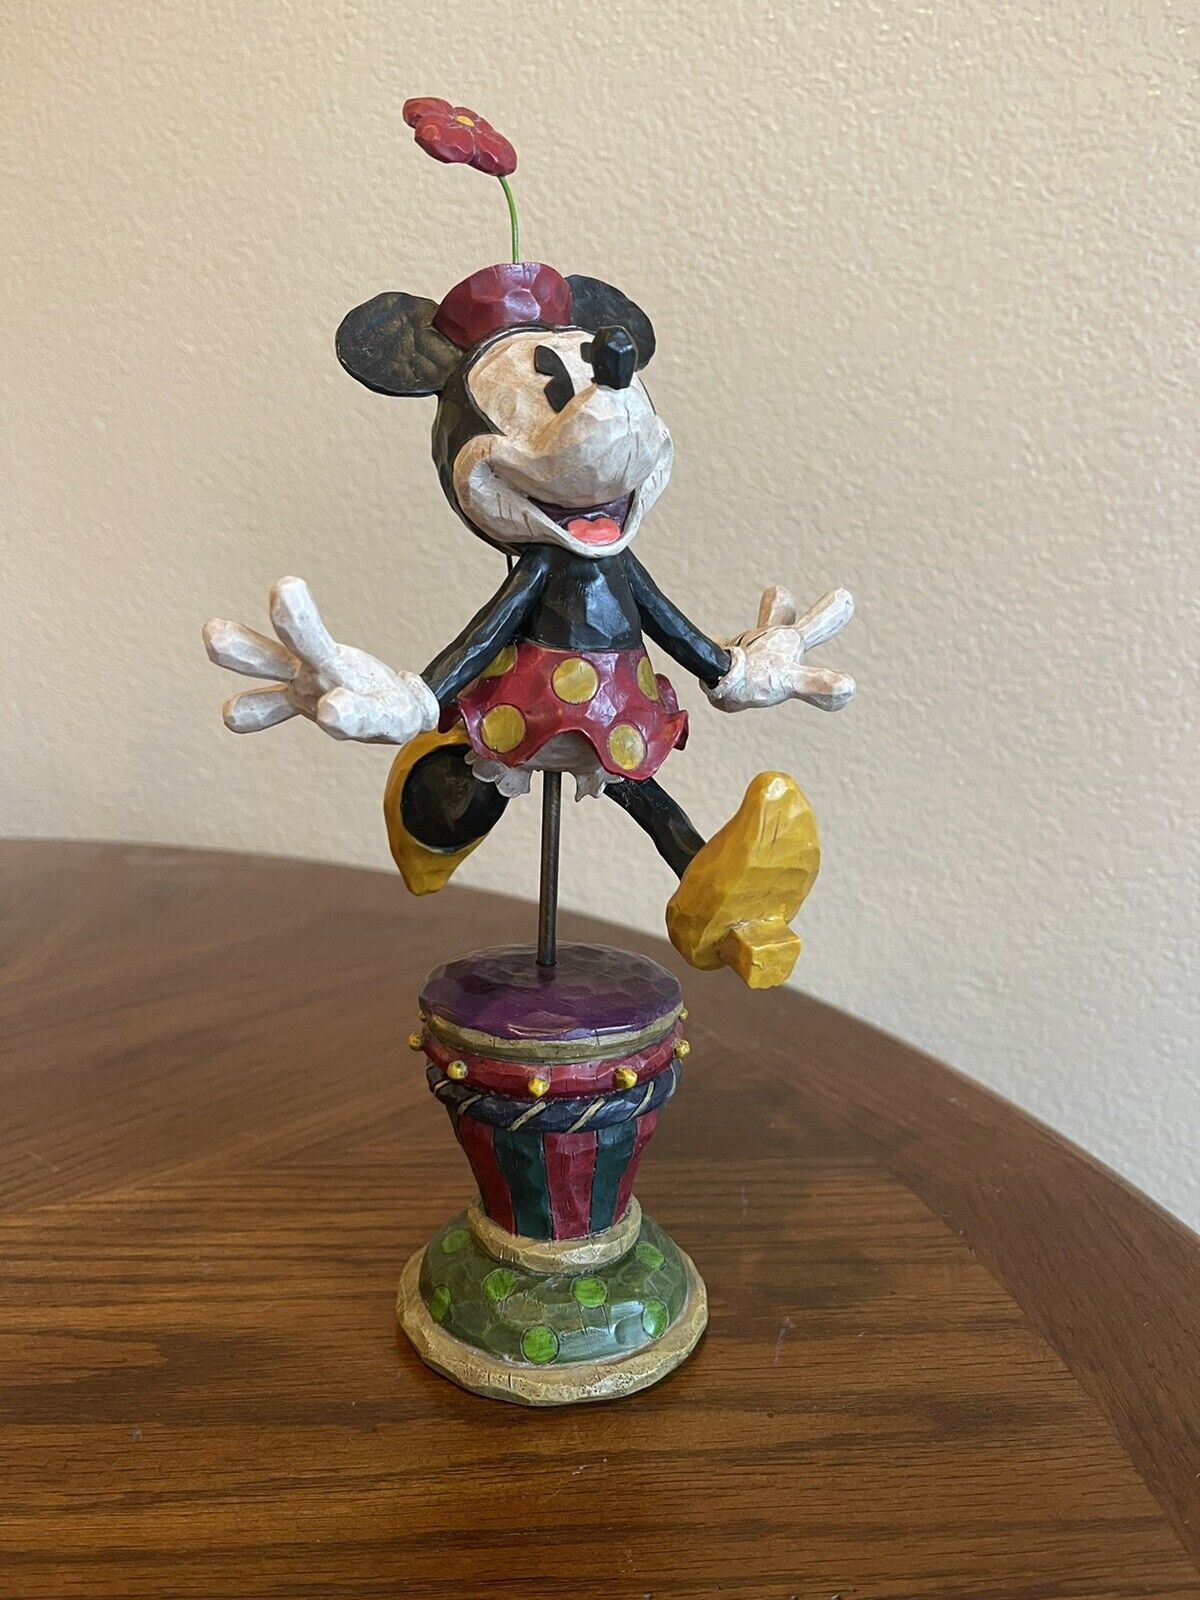 Authentic Original Disney Theme Parks Minnie Mouse Figure